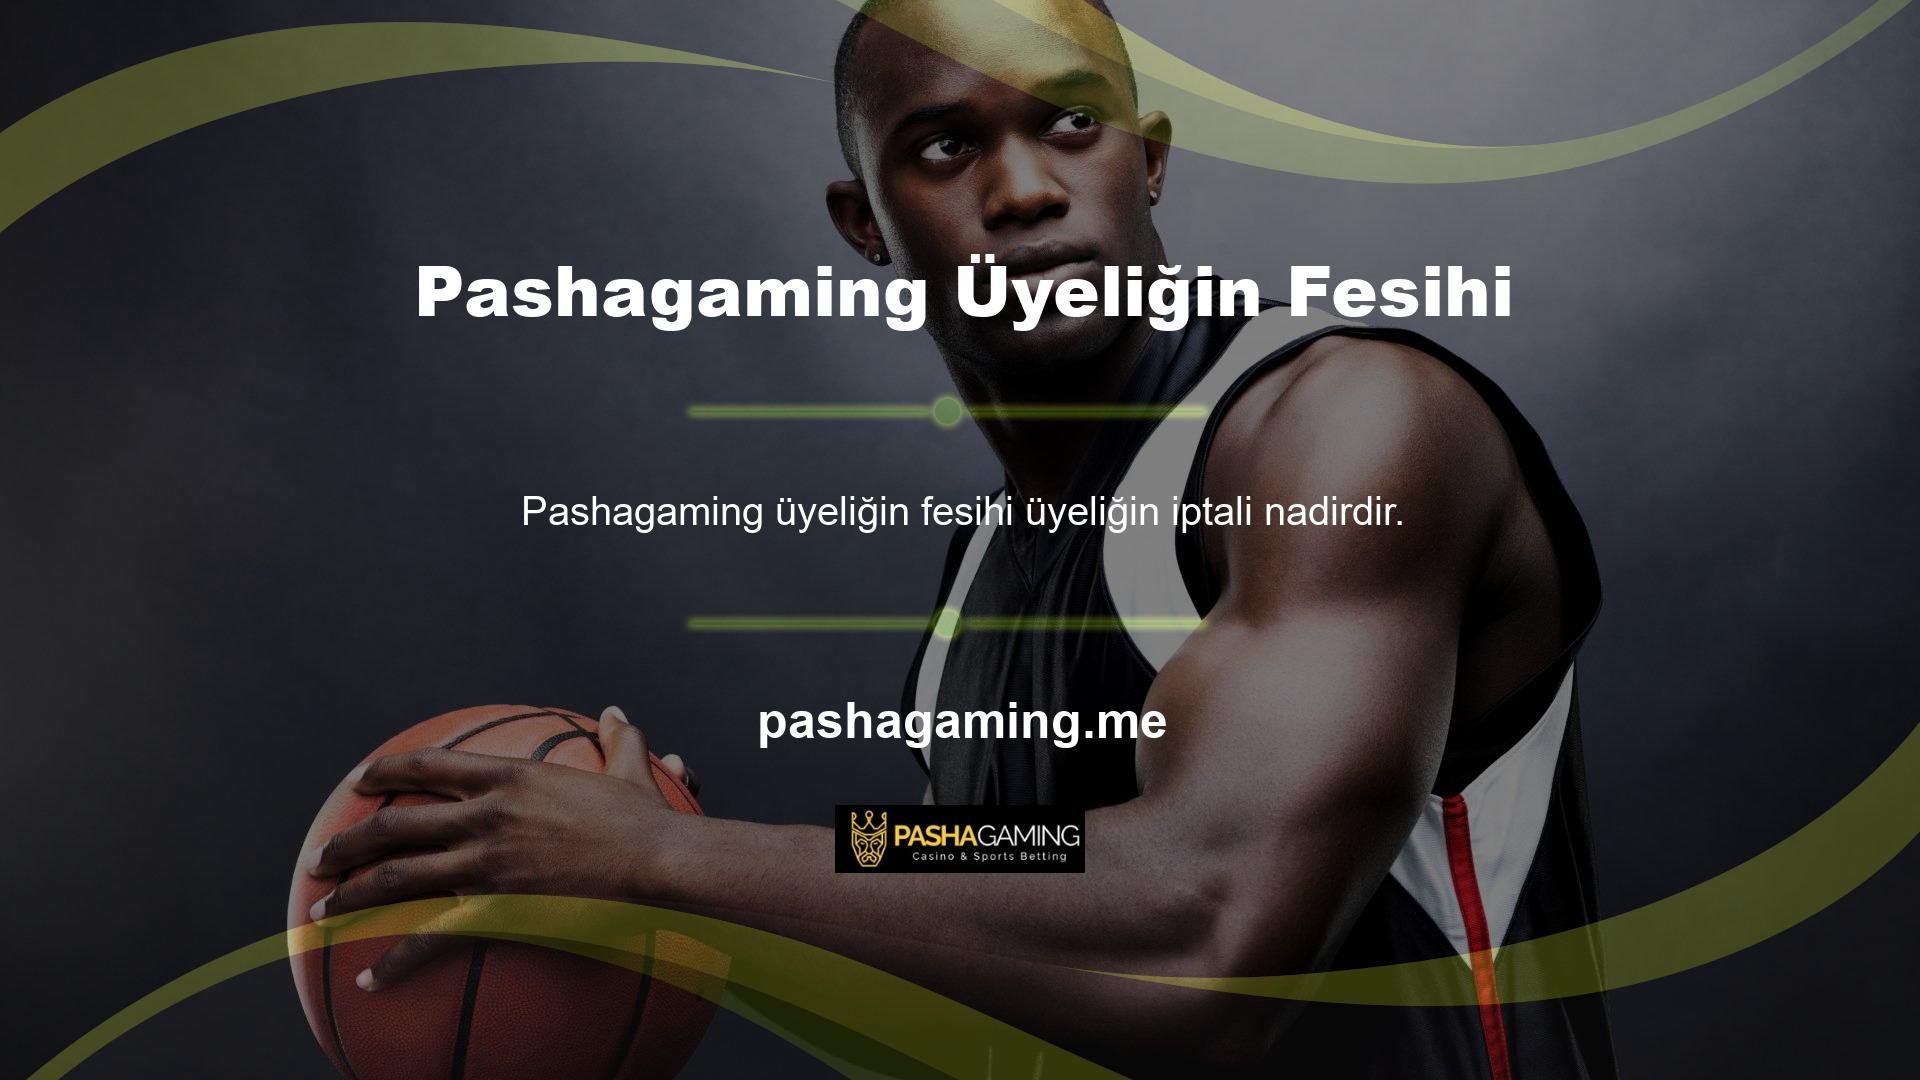 Pashagaming, ülkedeki ve dünya çapındaki en düşük üye iptali bahis şirketlerinden biridir